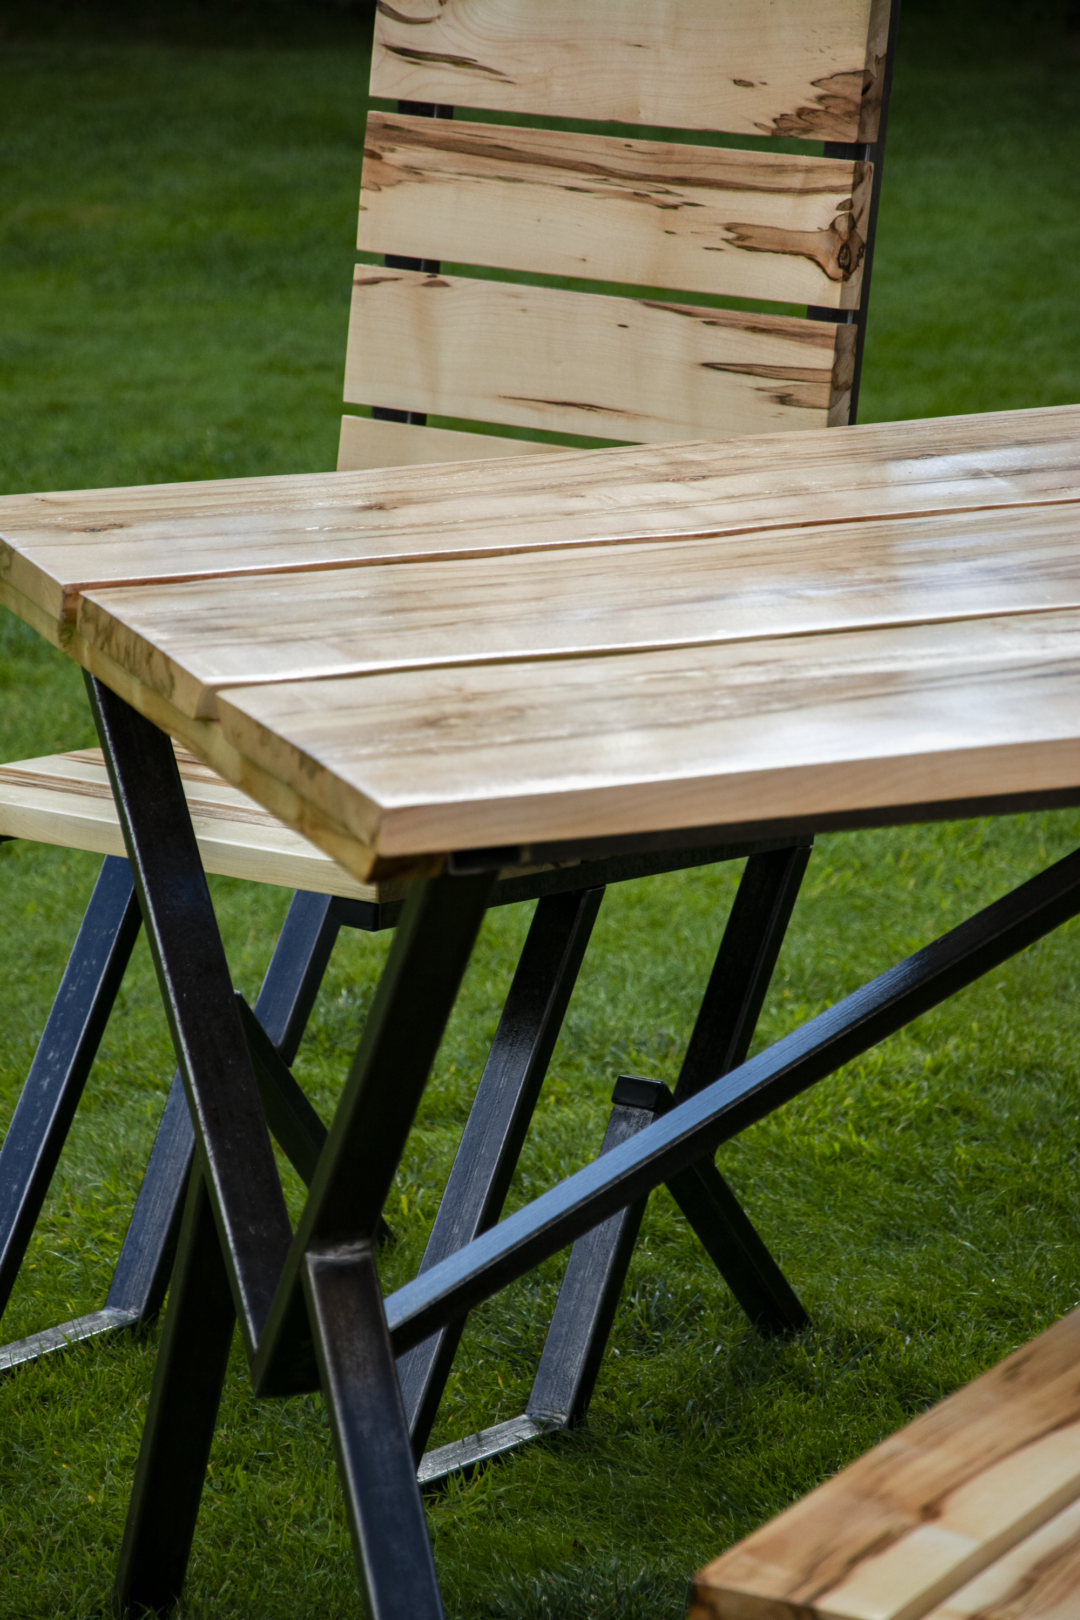 Meble ogrodowe zestaw Family, 6 krzeseł, stół z litego drewna klonowego i surowej stali, do ogrodu,domu,restauracji,jadalni,hotelu